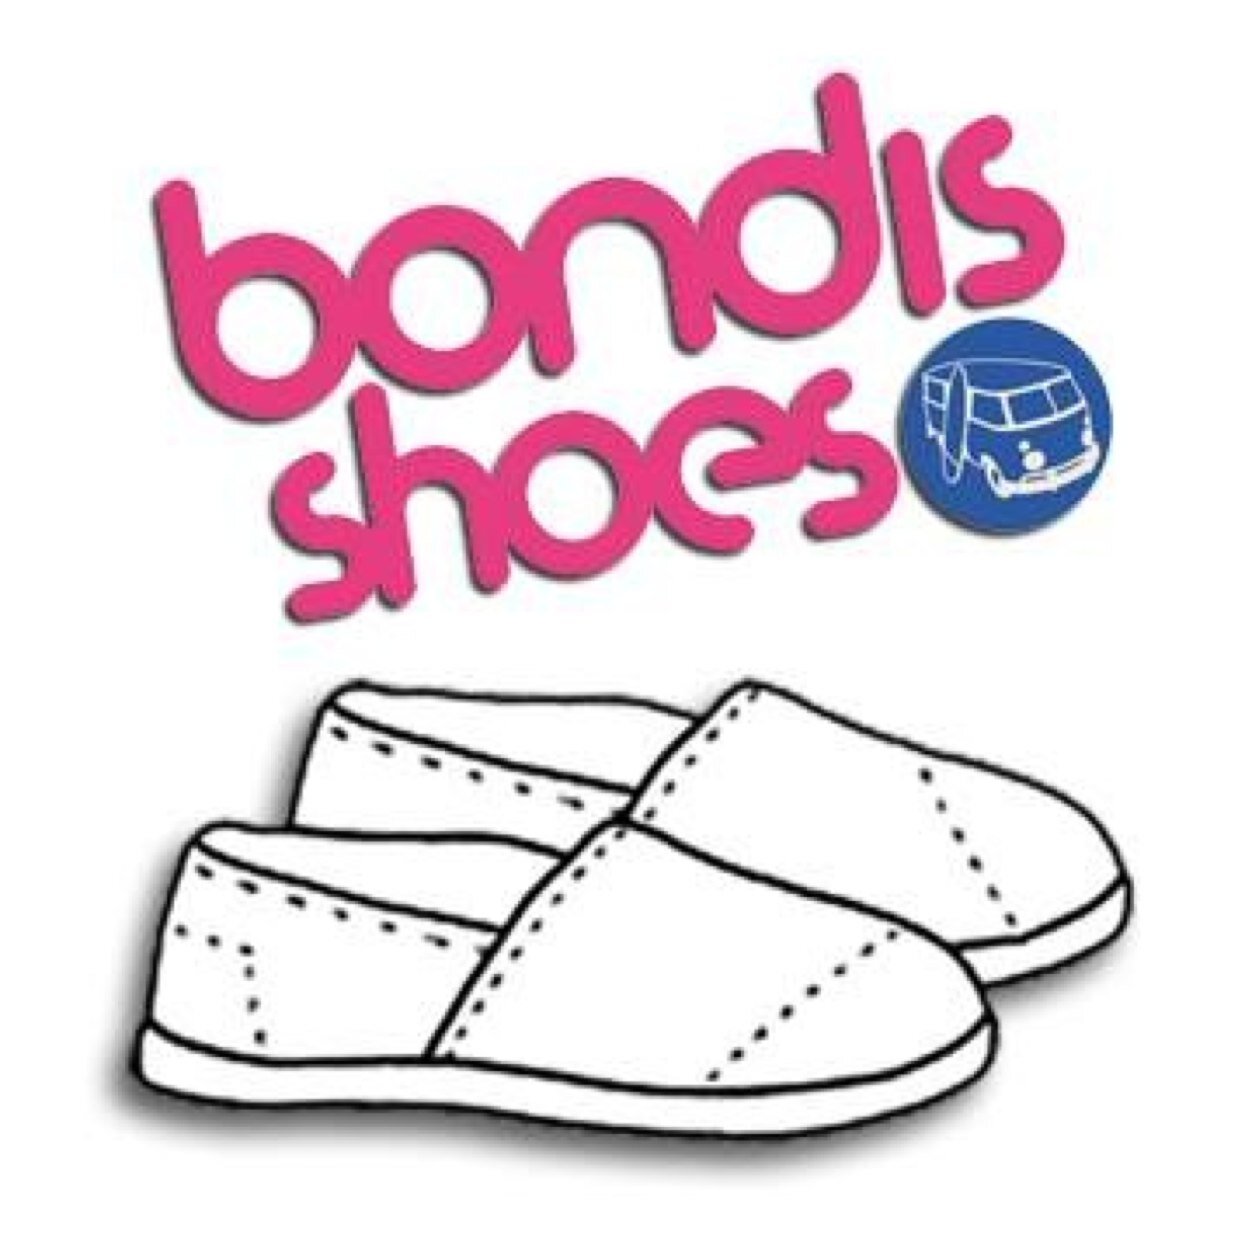 Por cada par de Bondis vendido, nosotros donamos otro a un chico sin calzado, es muy simple, una par vendido un par donado! http://t.co/UjdBU5yP3c